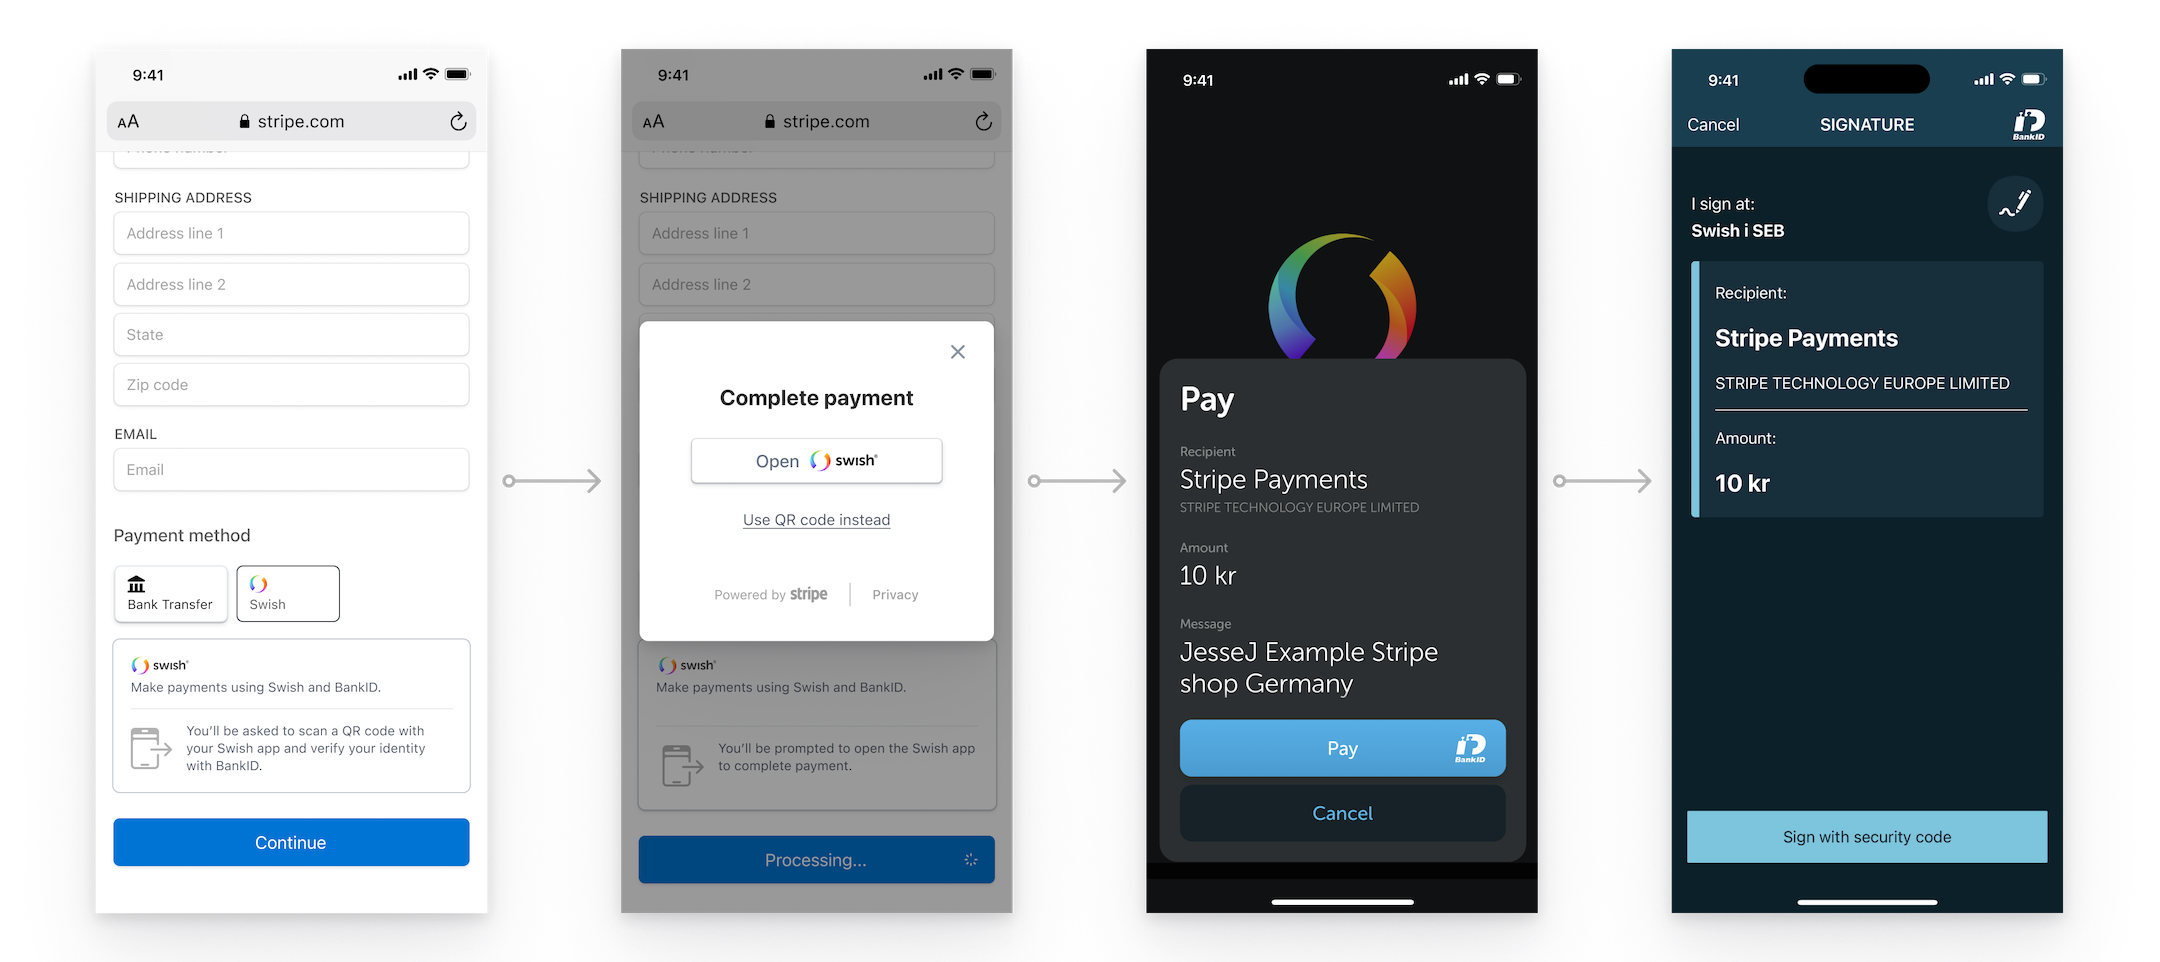 Le client suit un flux de redirection mobile pour payer avec Swish.